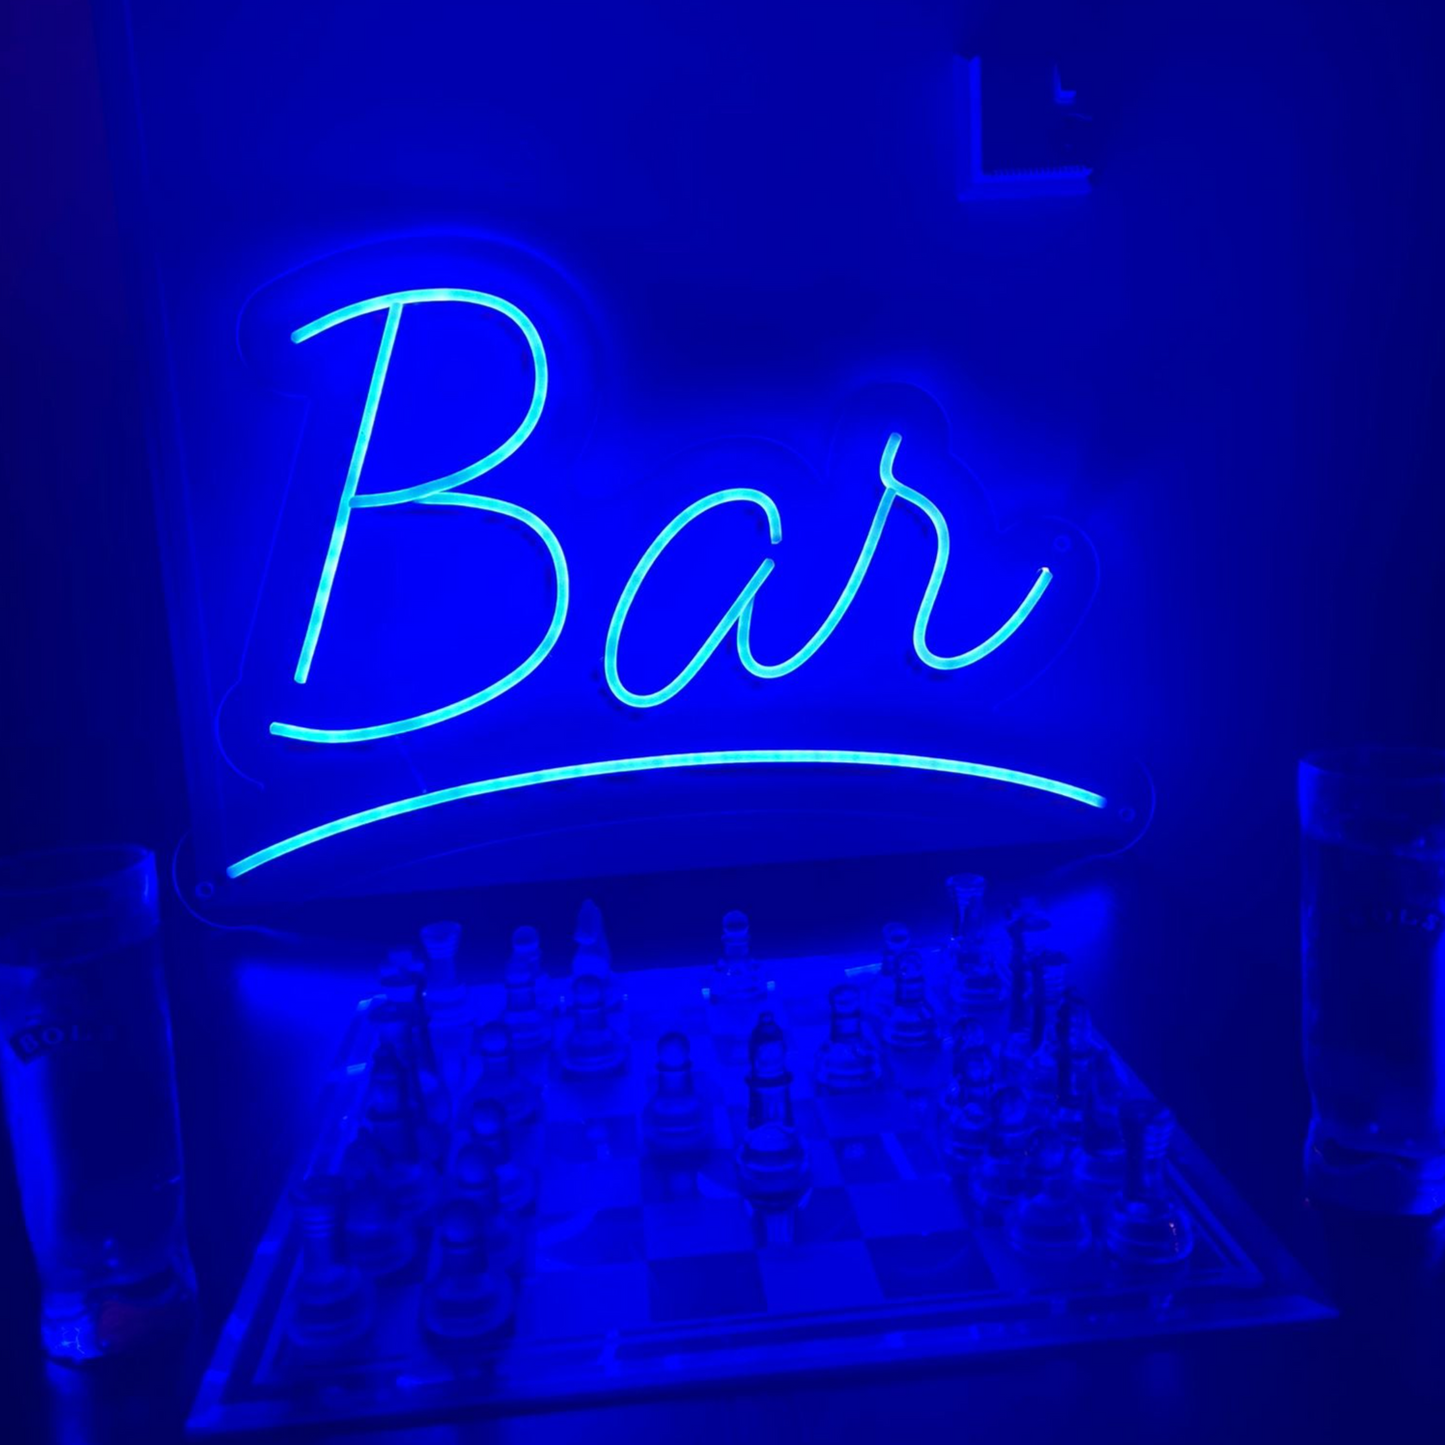 Bar Insegna al neon